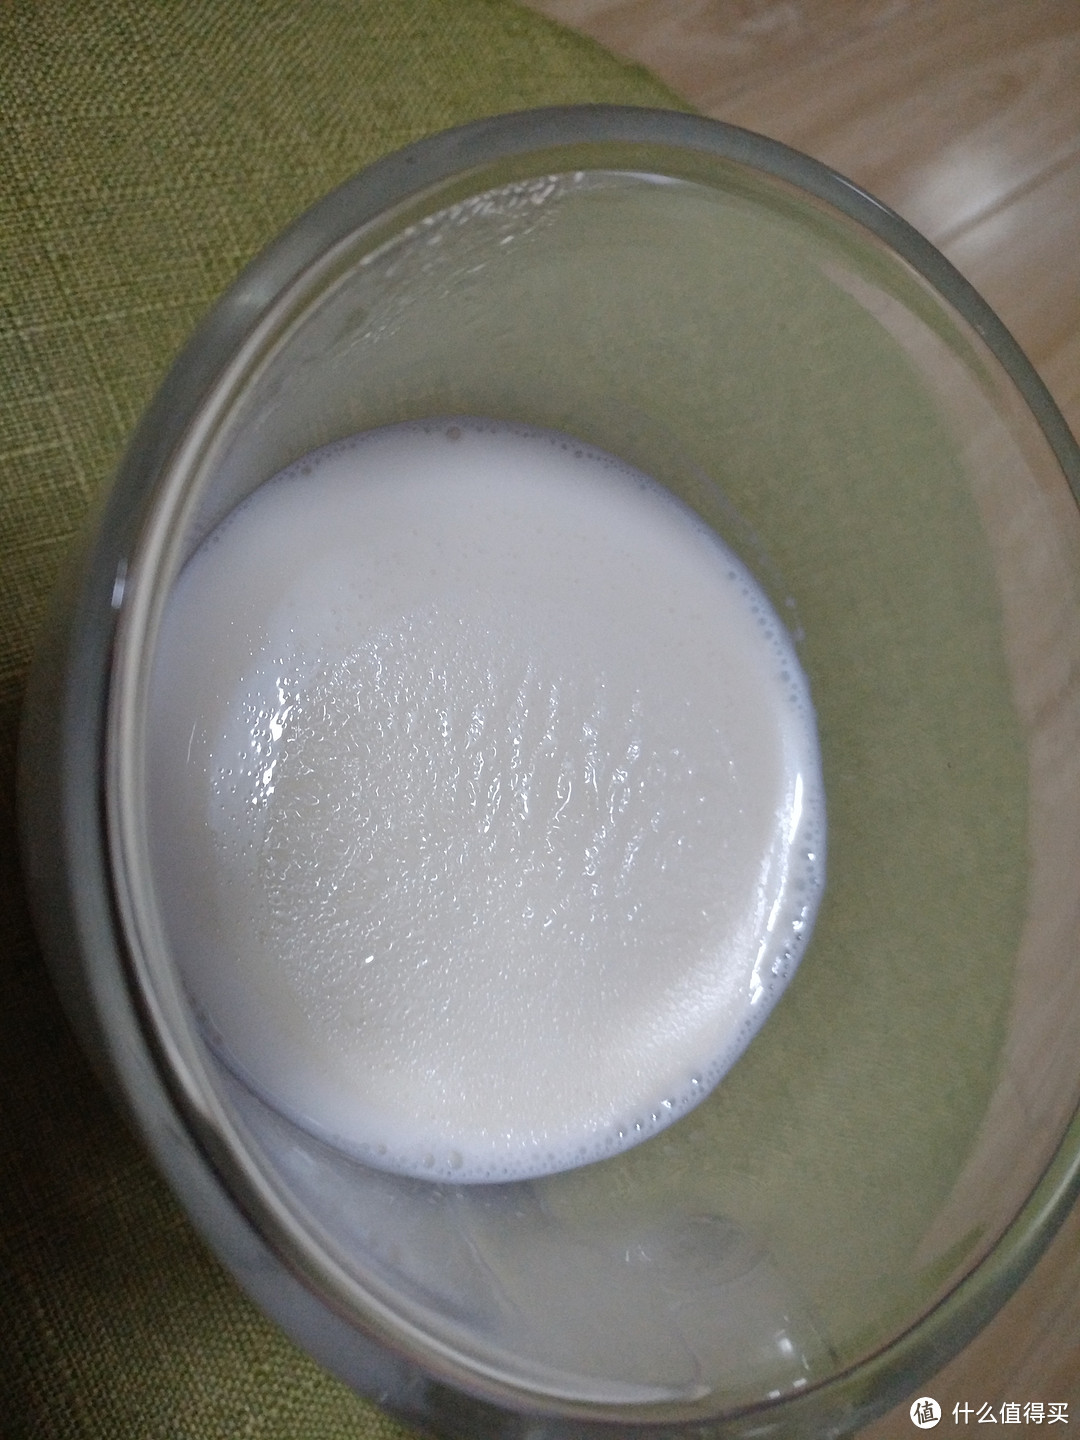 喝了不拉肚子的新西兰牛奶——Perfectlands柏菲兰 新西兰纯牛奶评测